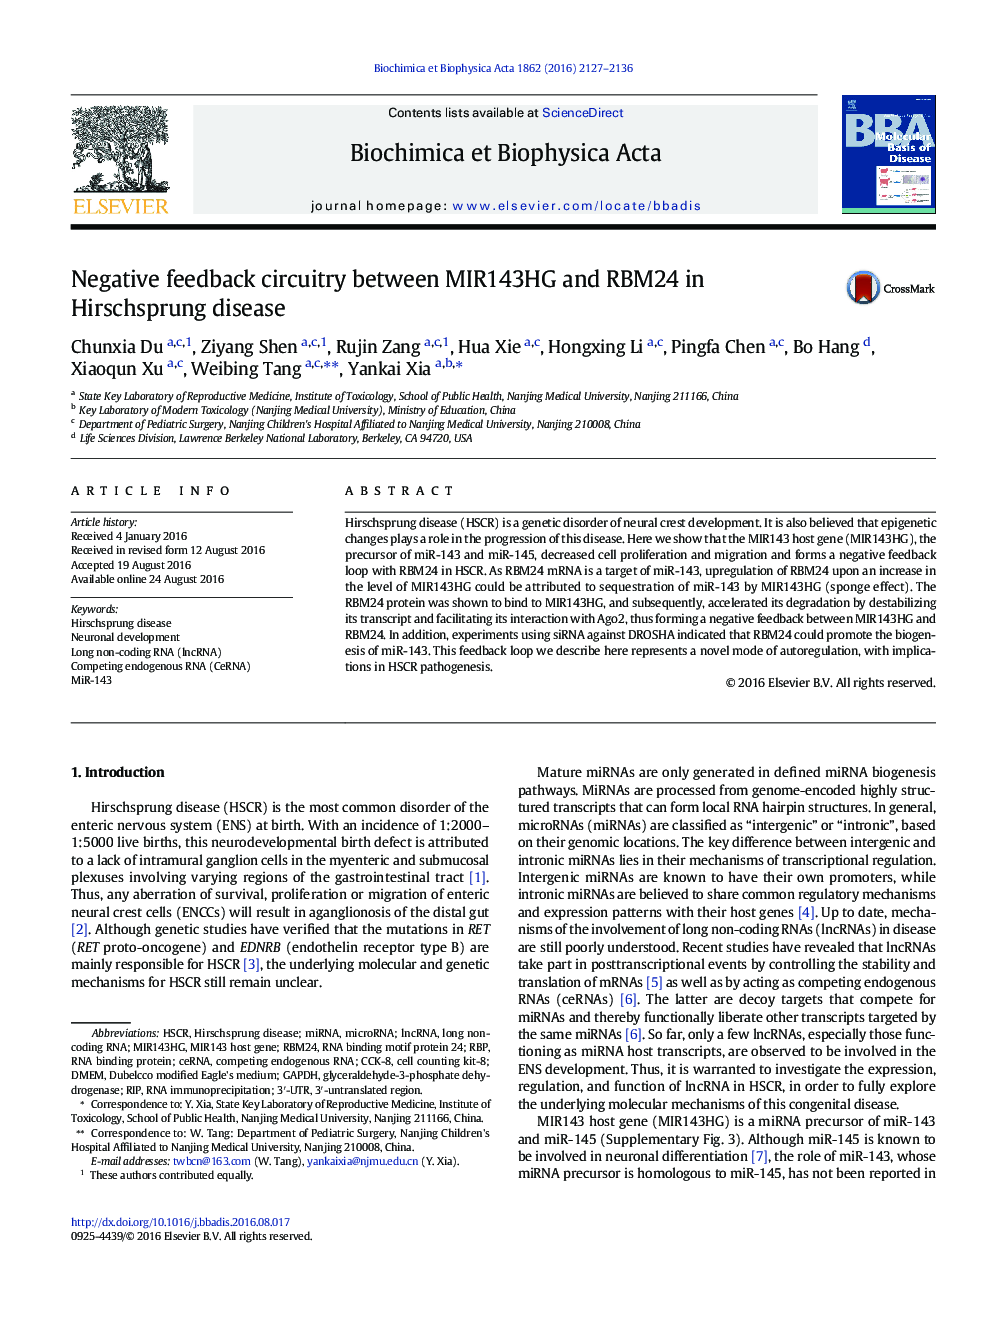 مدار بازخورد منفی بین MIR143HG و RBM24 در بیماری هیرشپرونگ